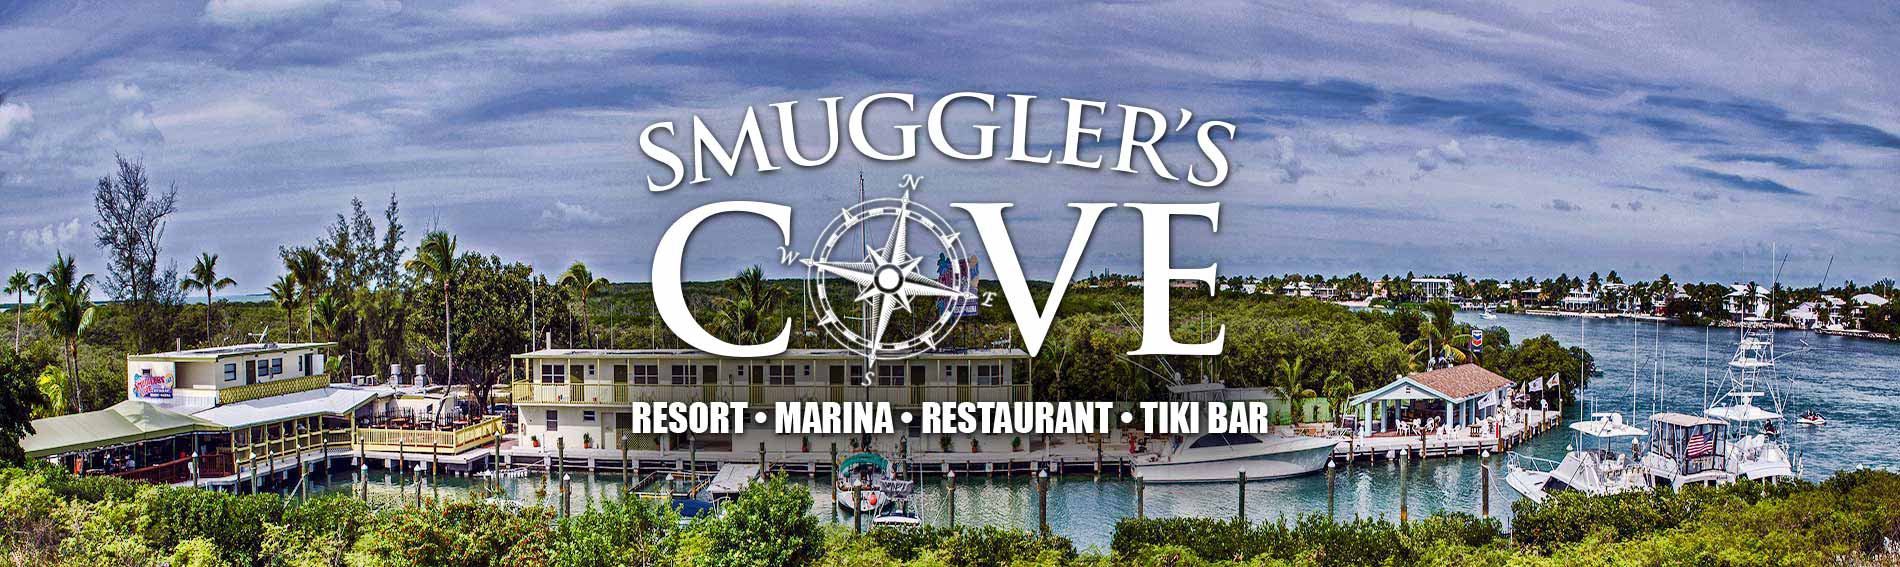 Smuggler's Cove Marina in Islamorada, FL